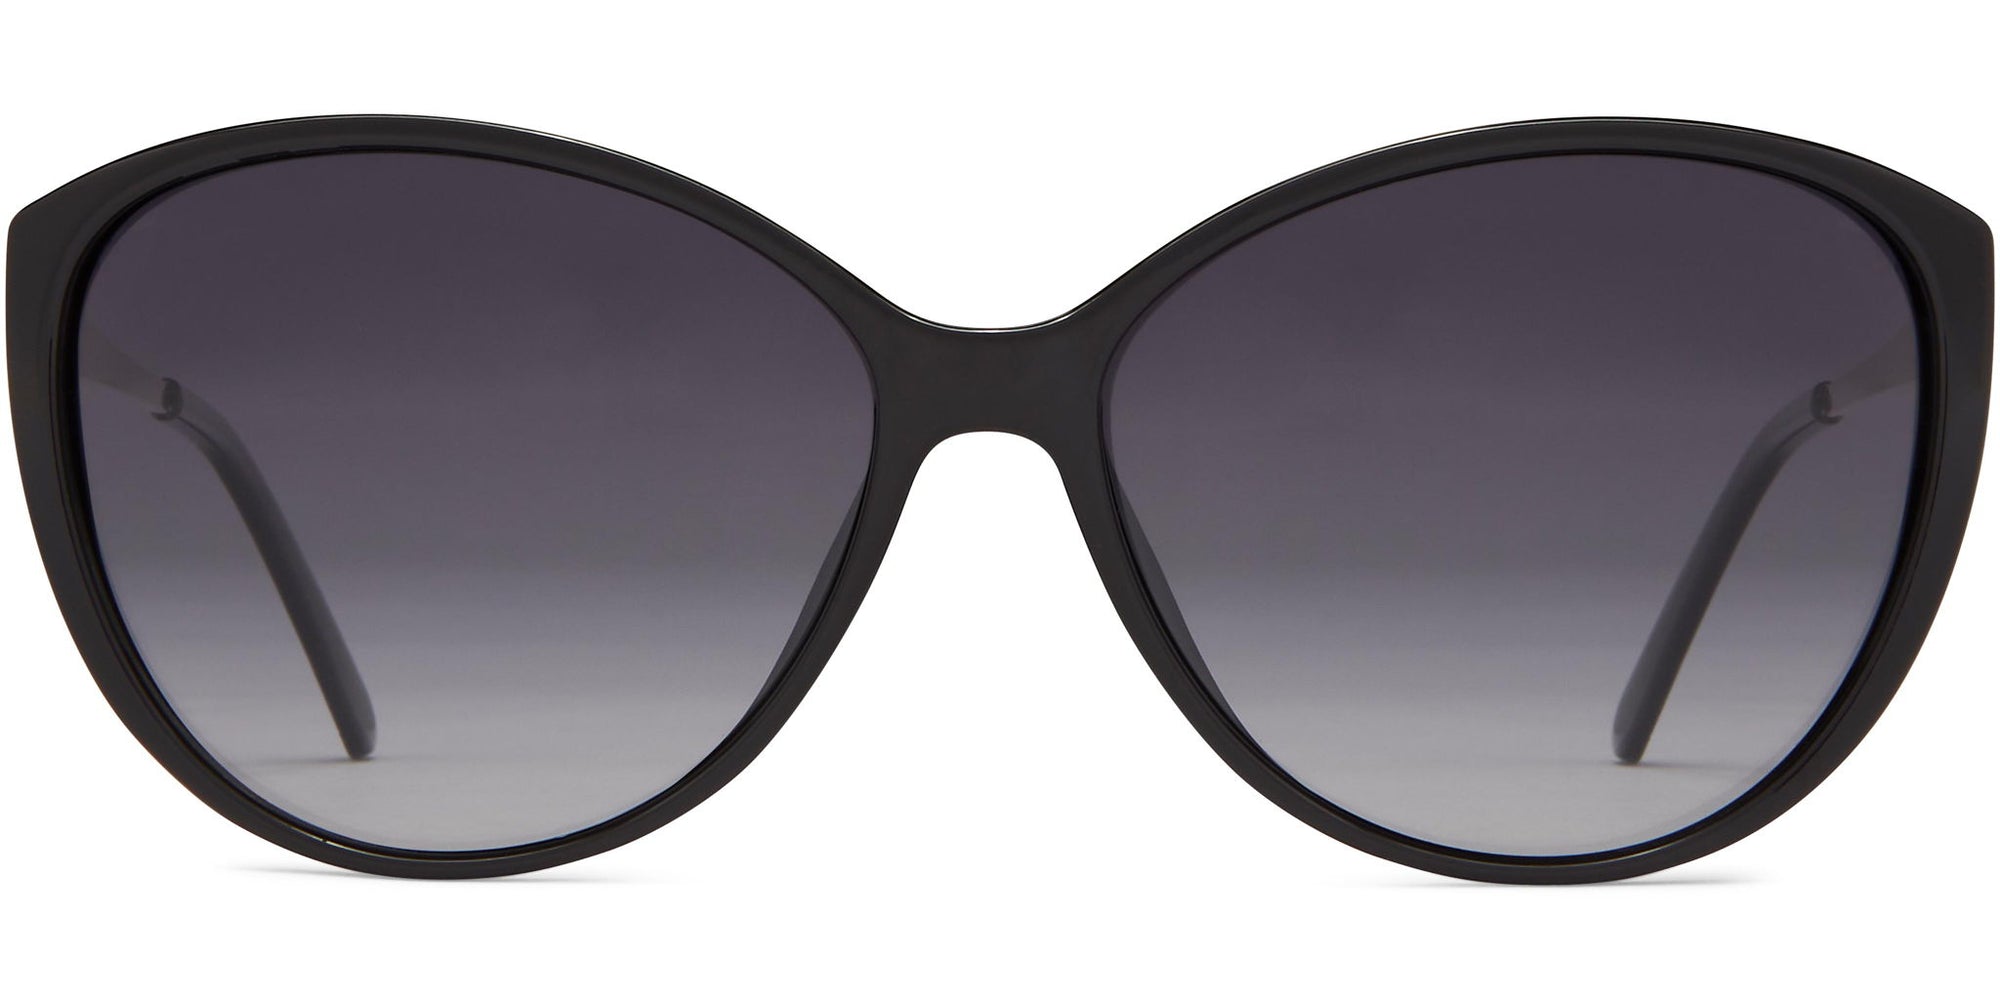 Caroline - Black/Gray Lens - Sunglasses